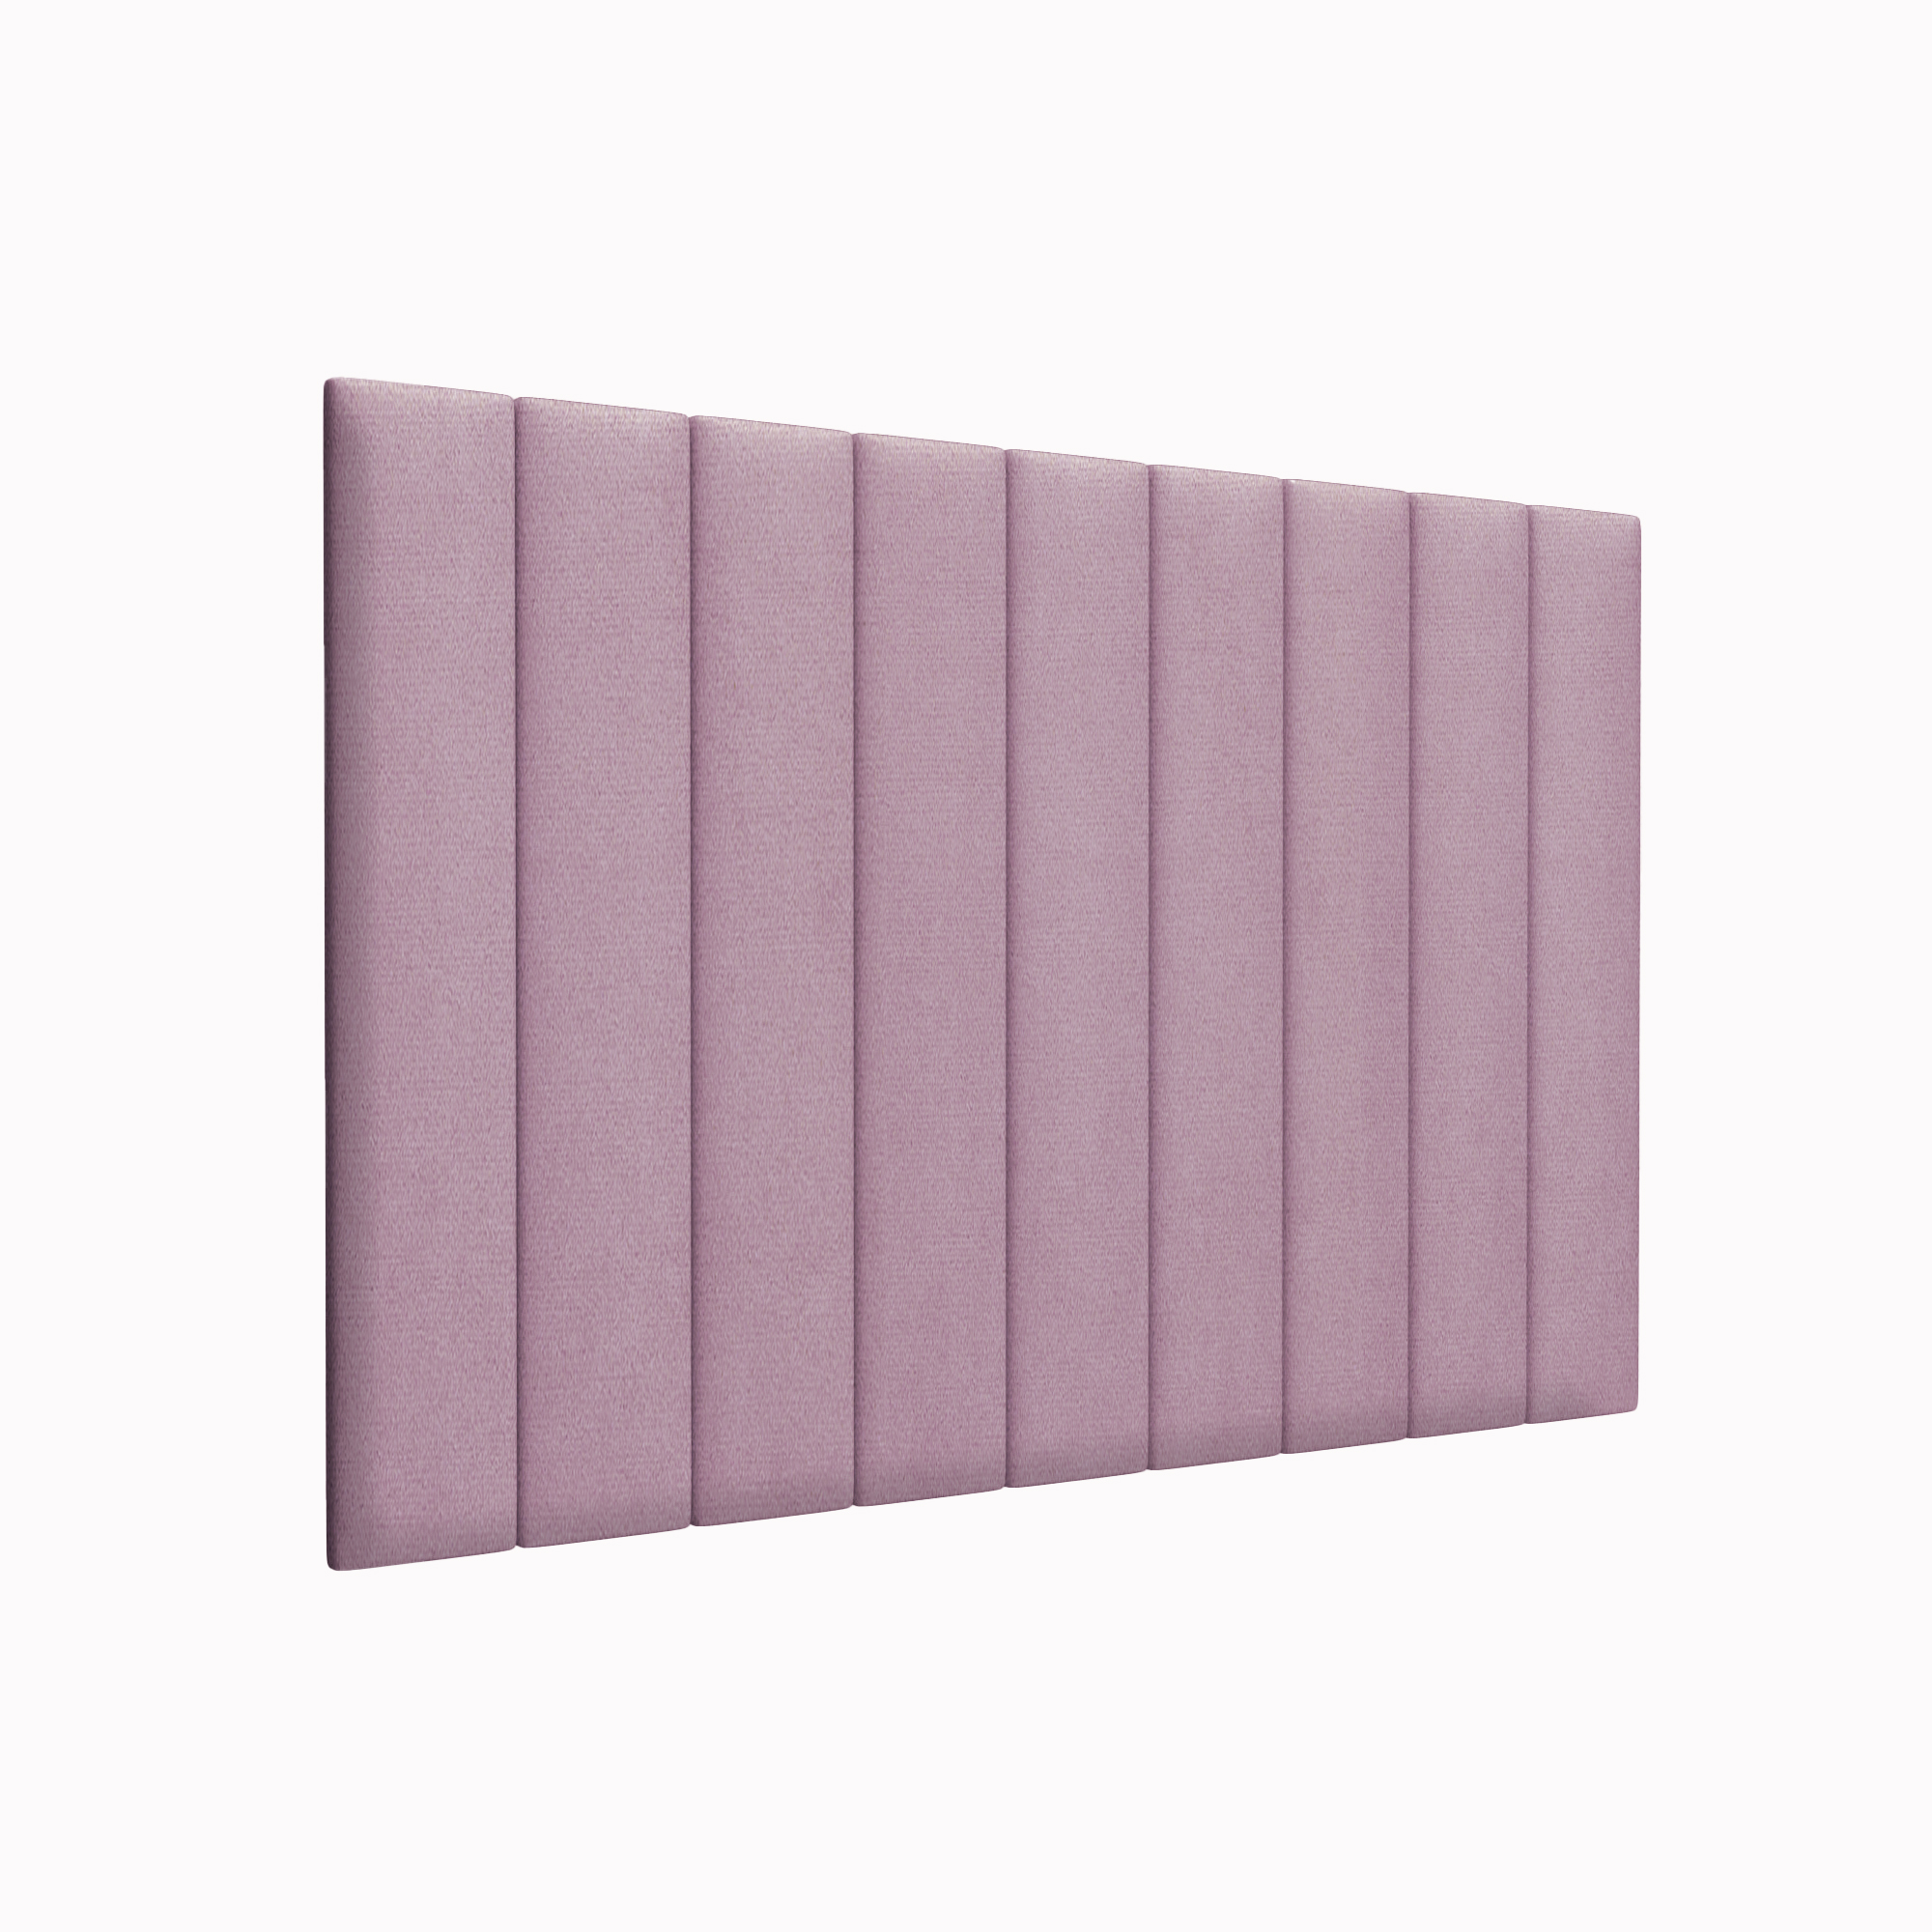 Мягкие стены детской Velour Pink 15х90 см 2 шт.